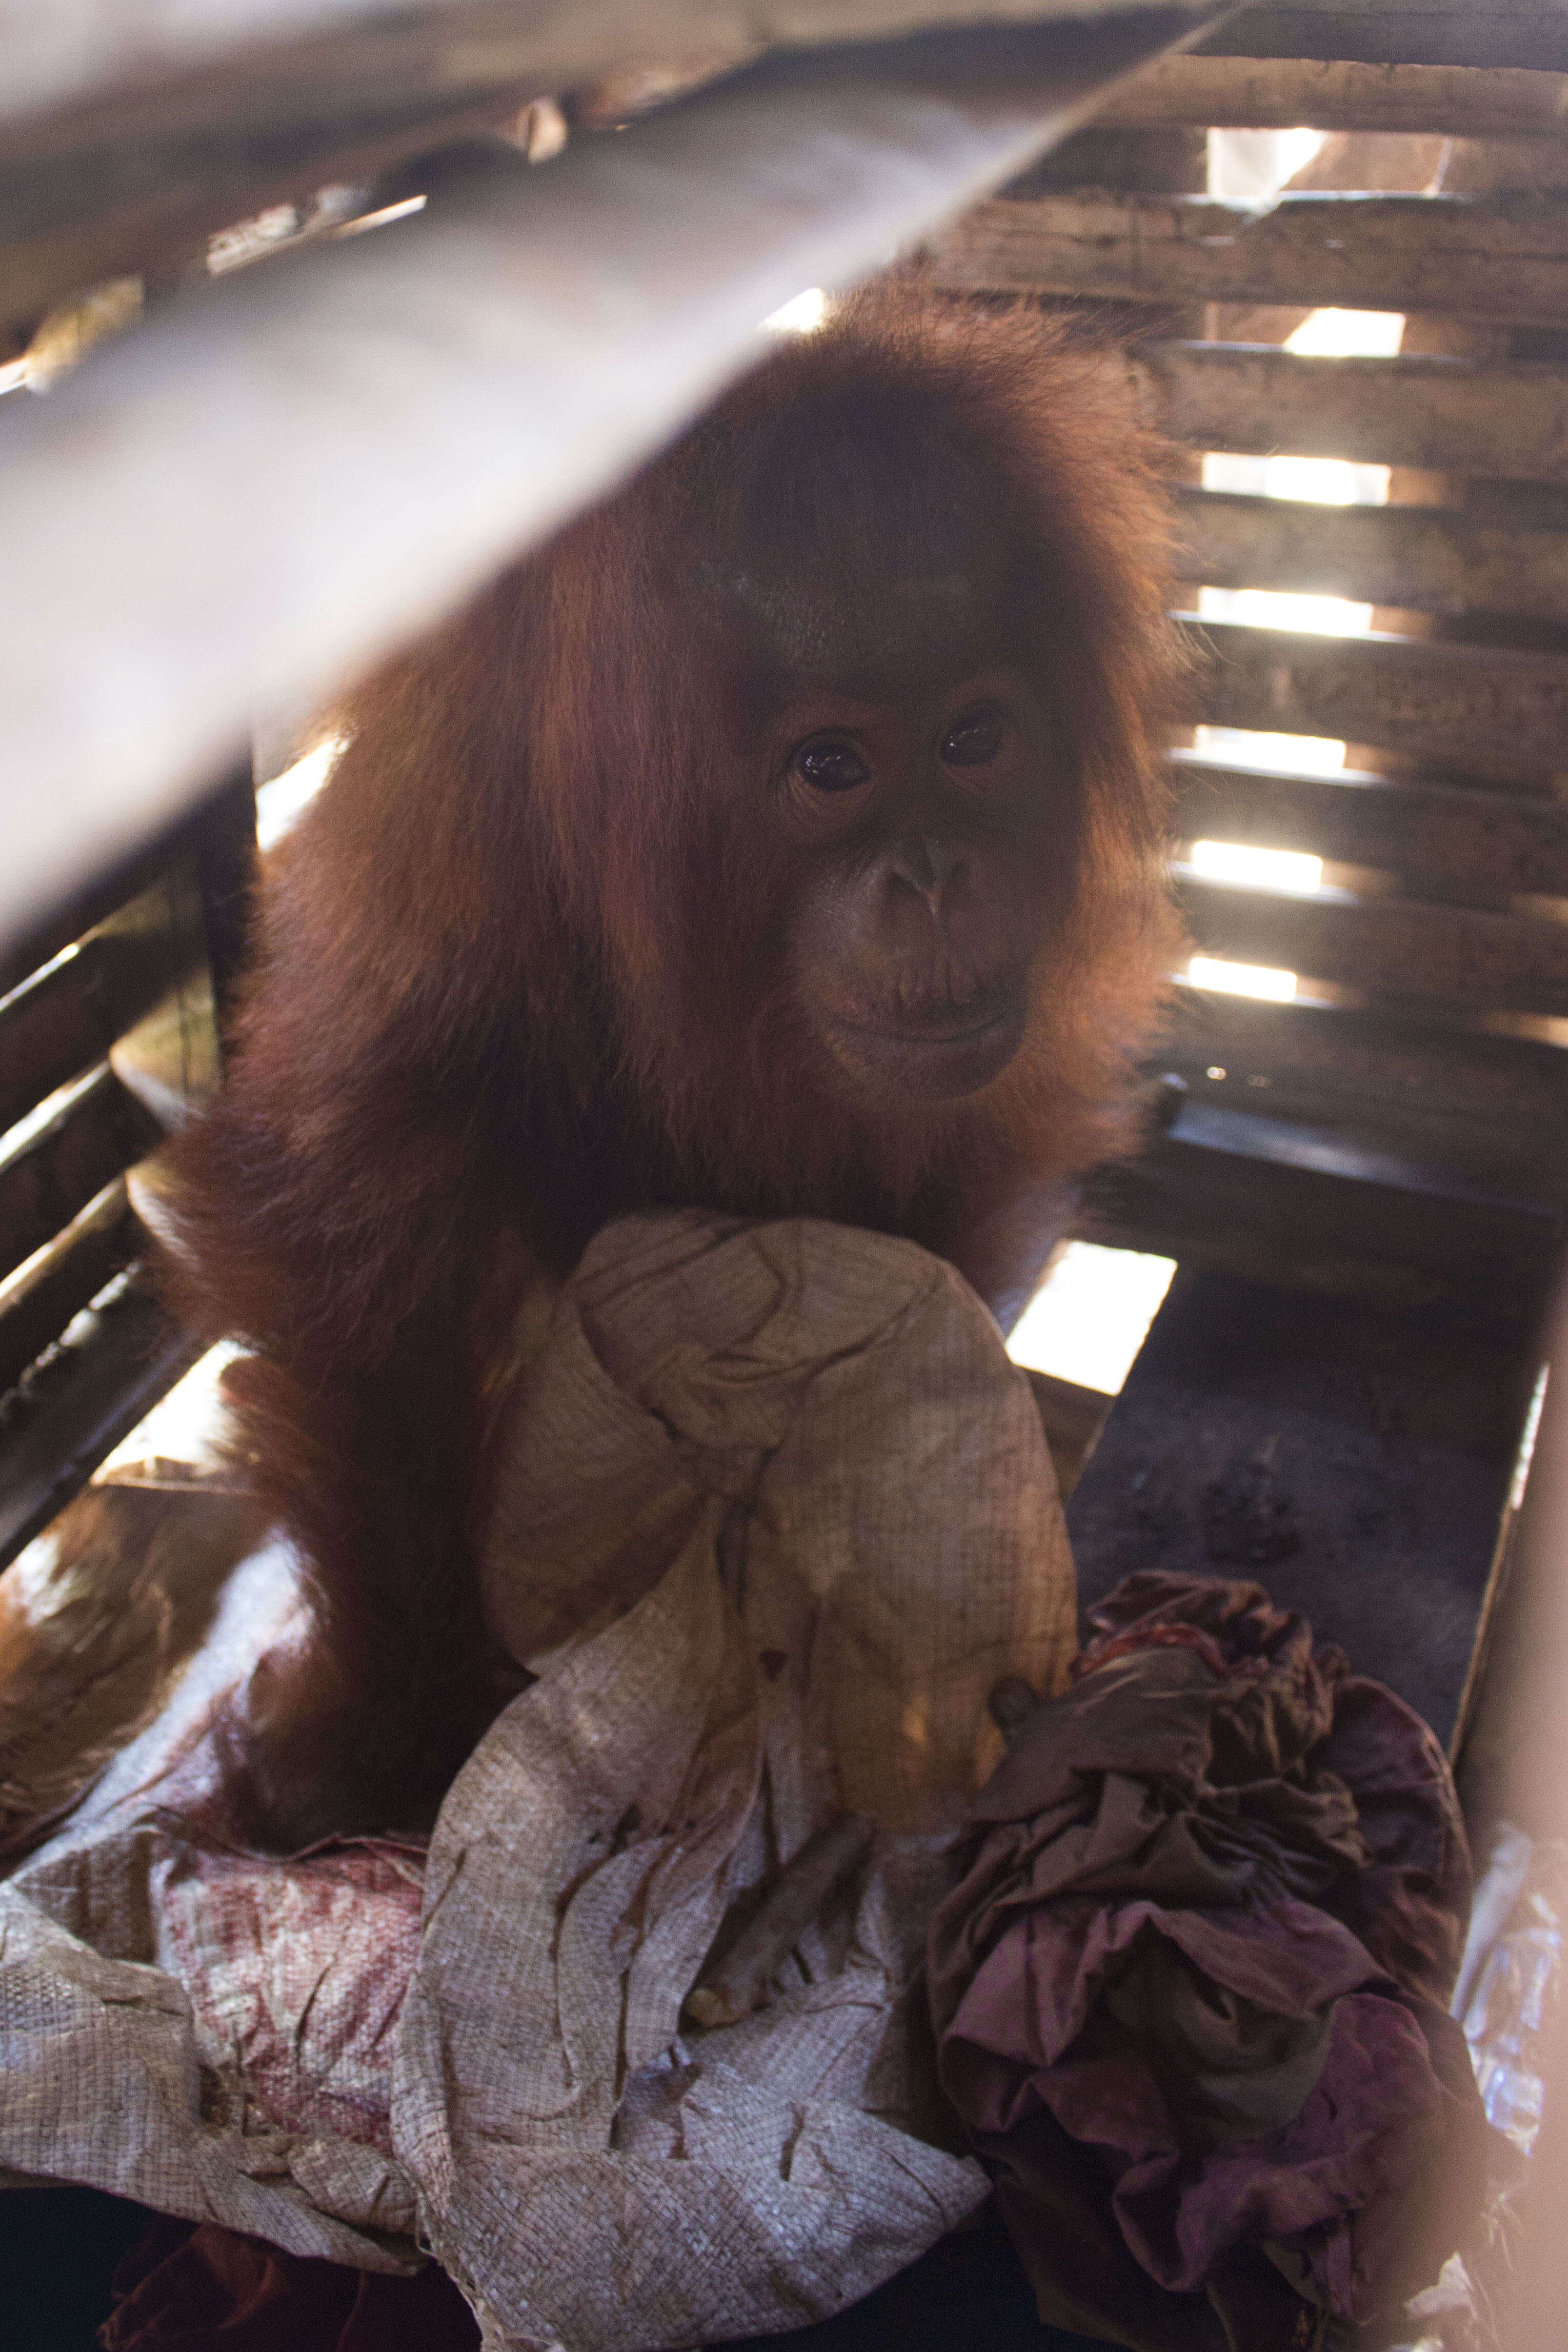 Orangutan inside wooden crate